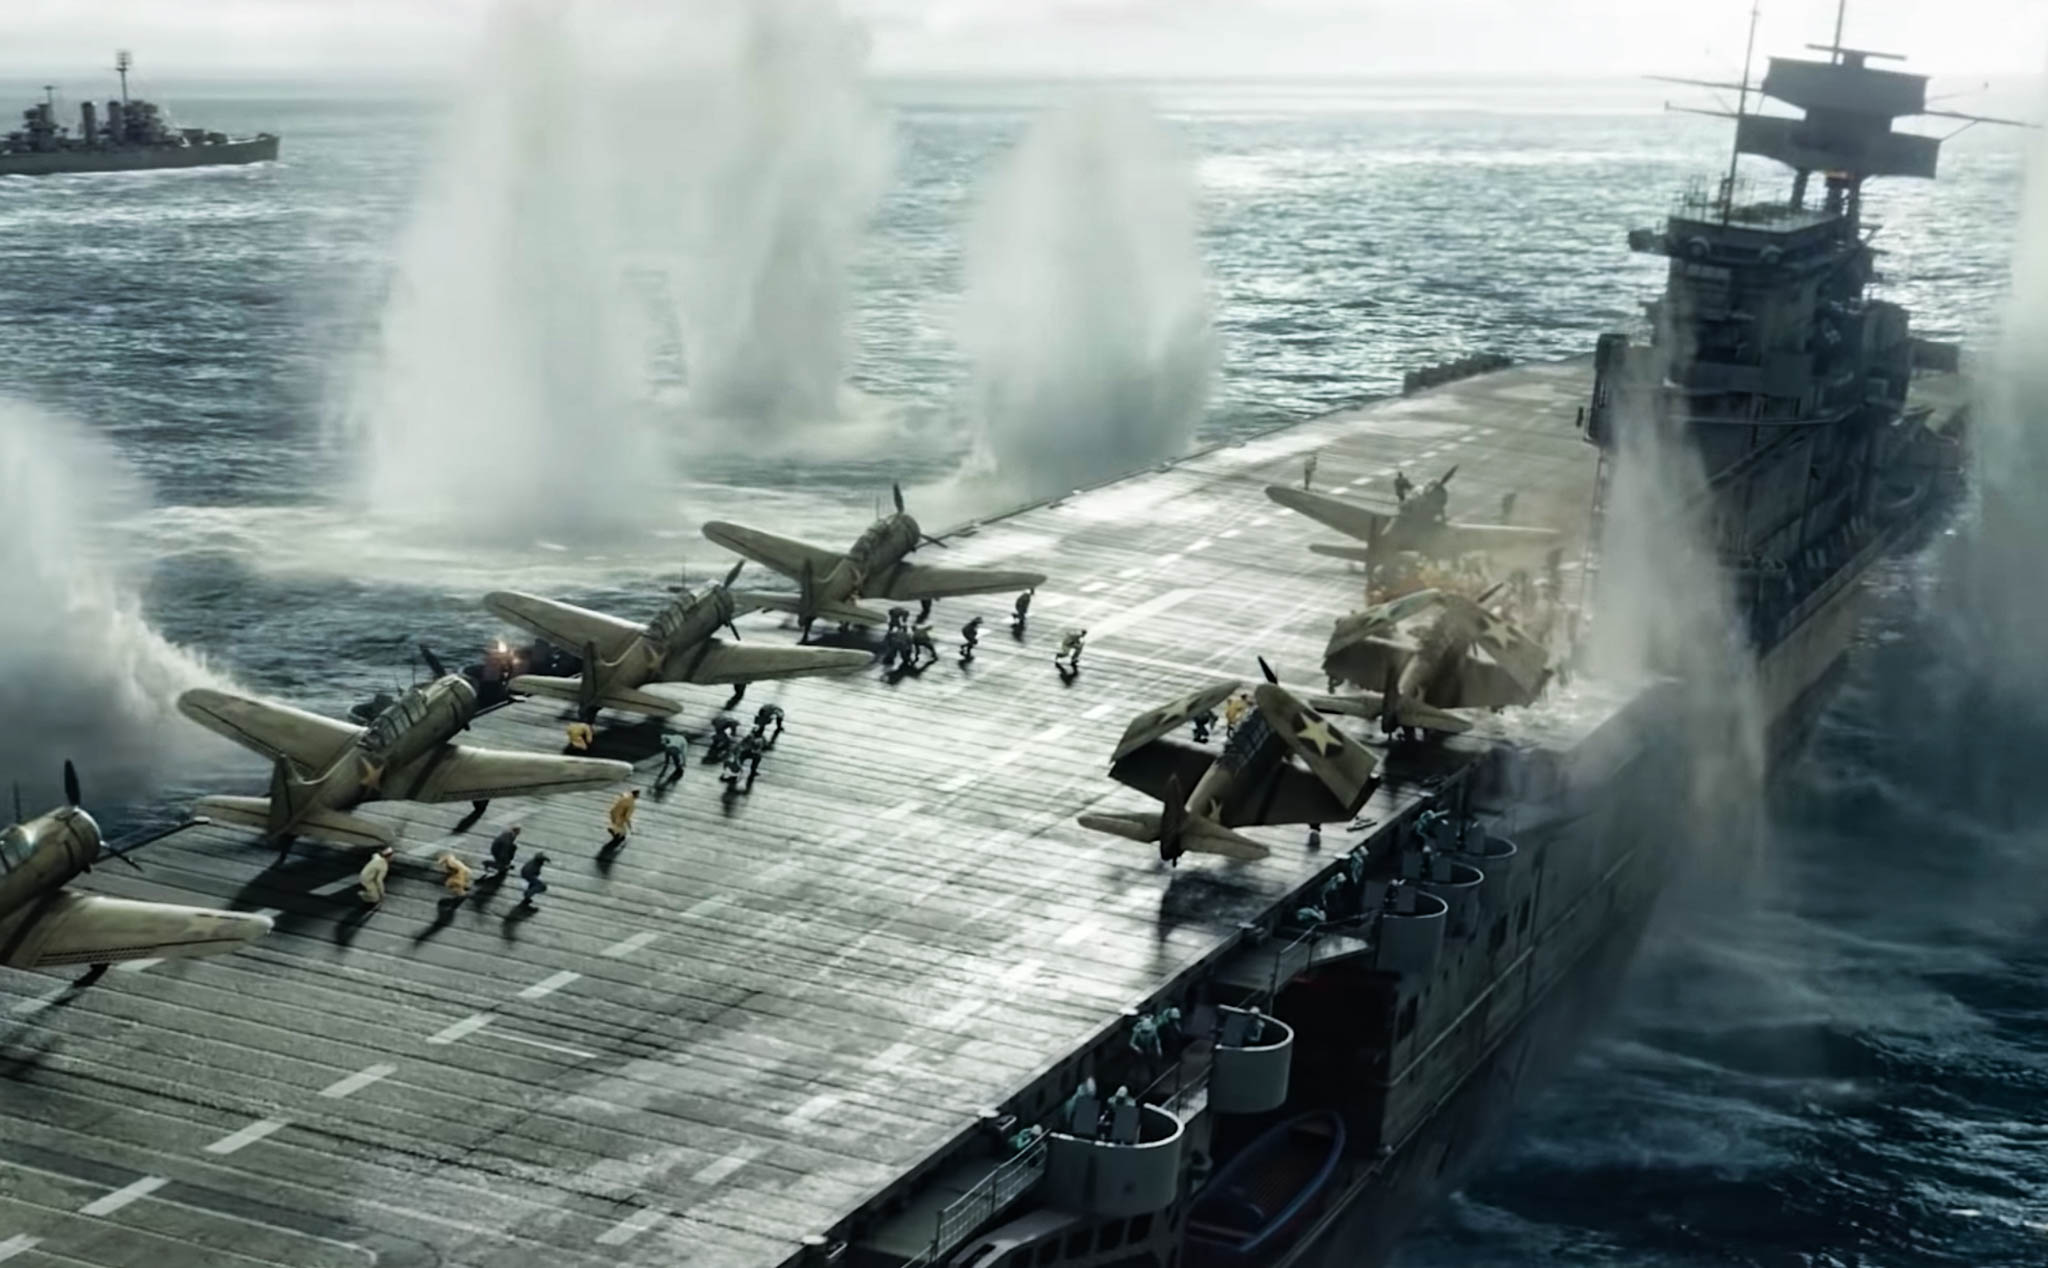 Mời xem trailer phim Midway: Trận hải chiến thay đổi cục diện Thái Bình Dương trong Thế Chiến thứ II